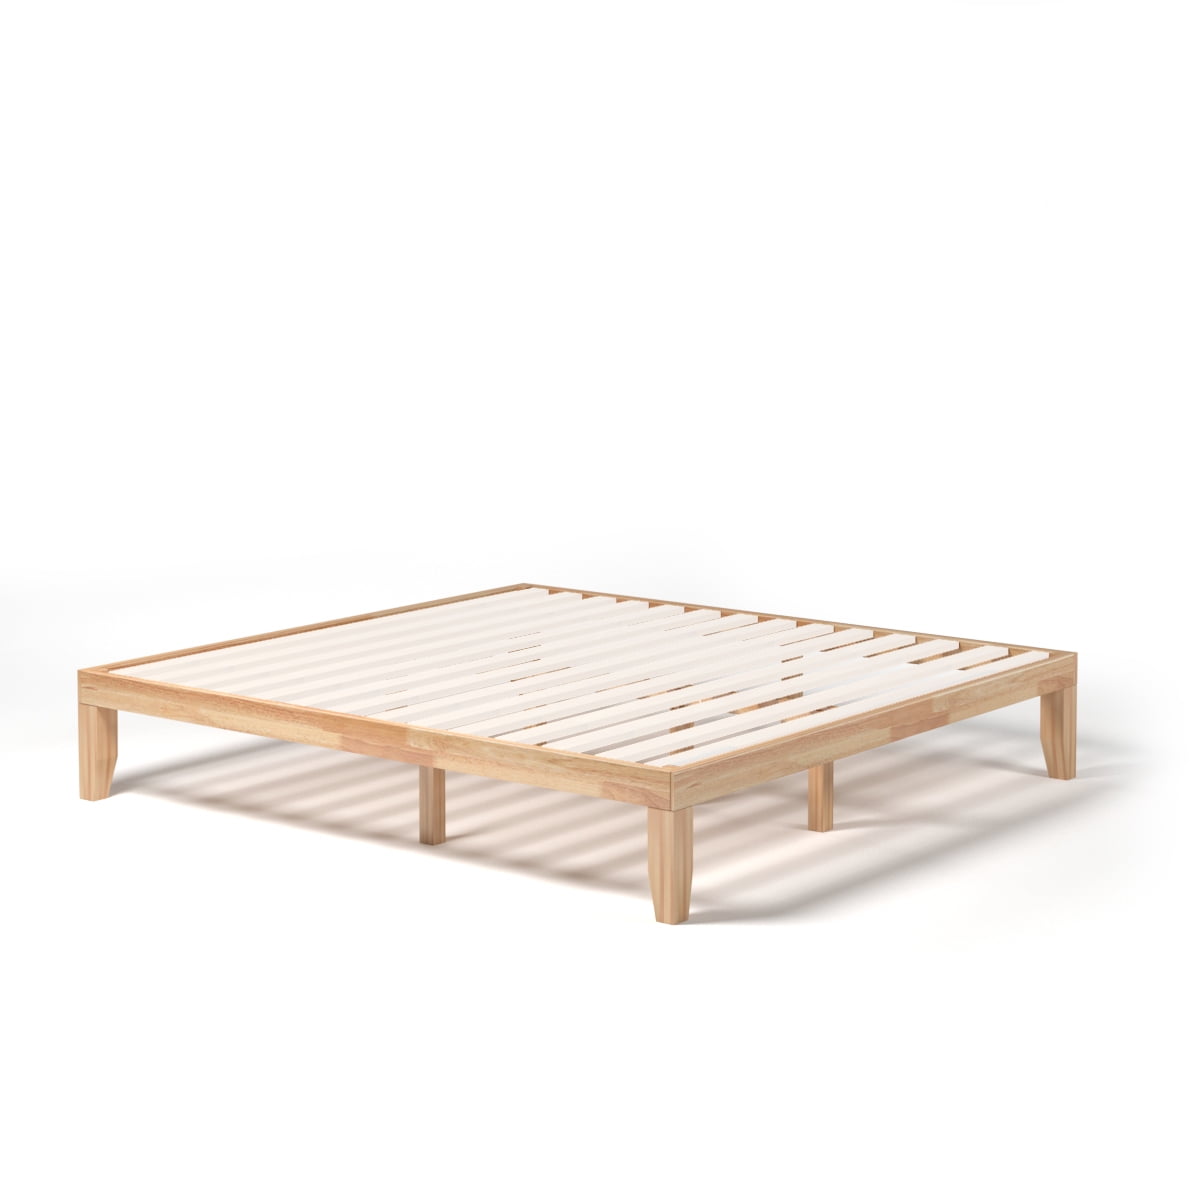 King Size 14" Wooden Bed Frame Mattress Platform Wood Slats for Home Natural